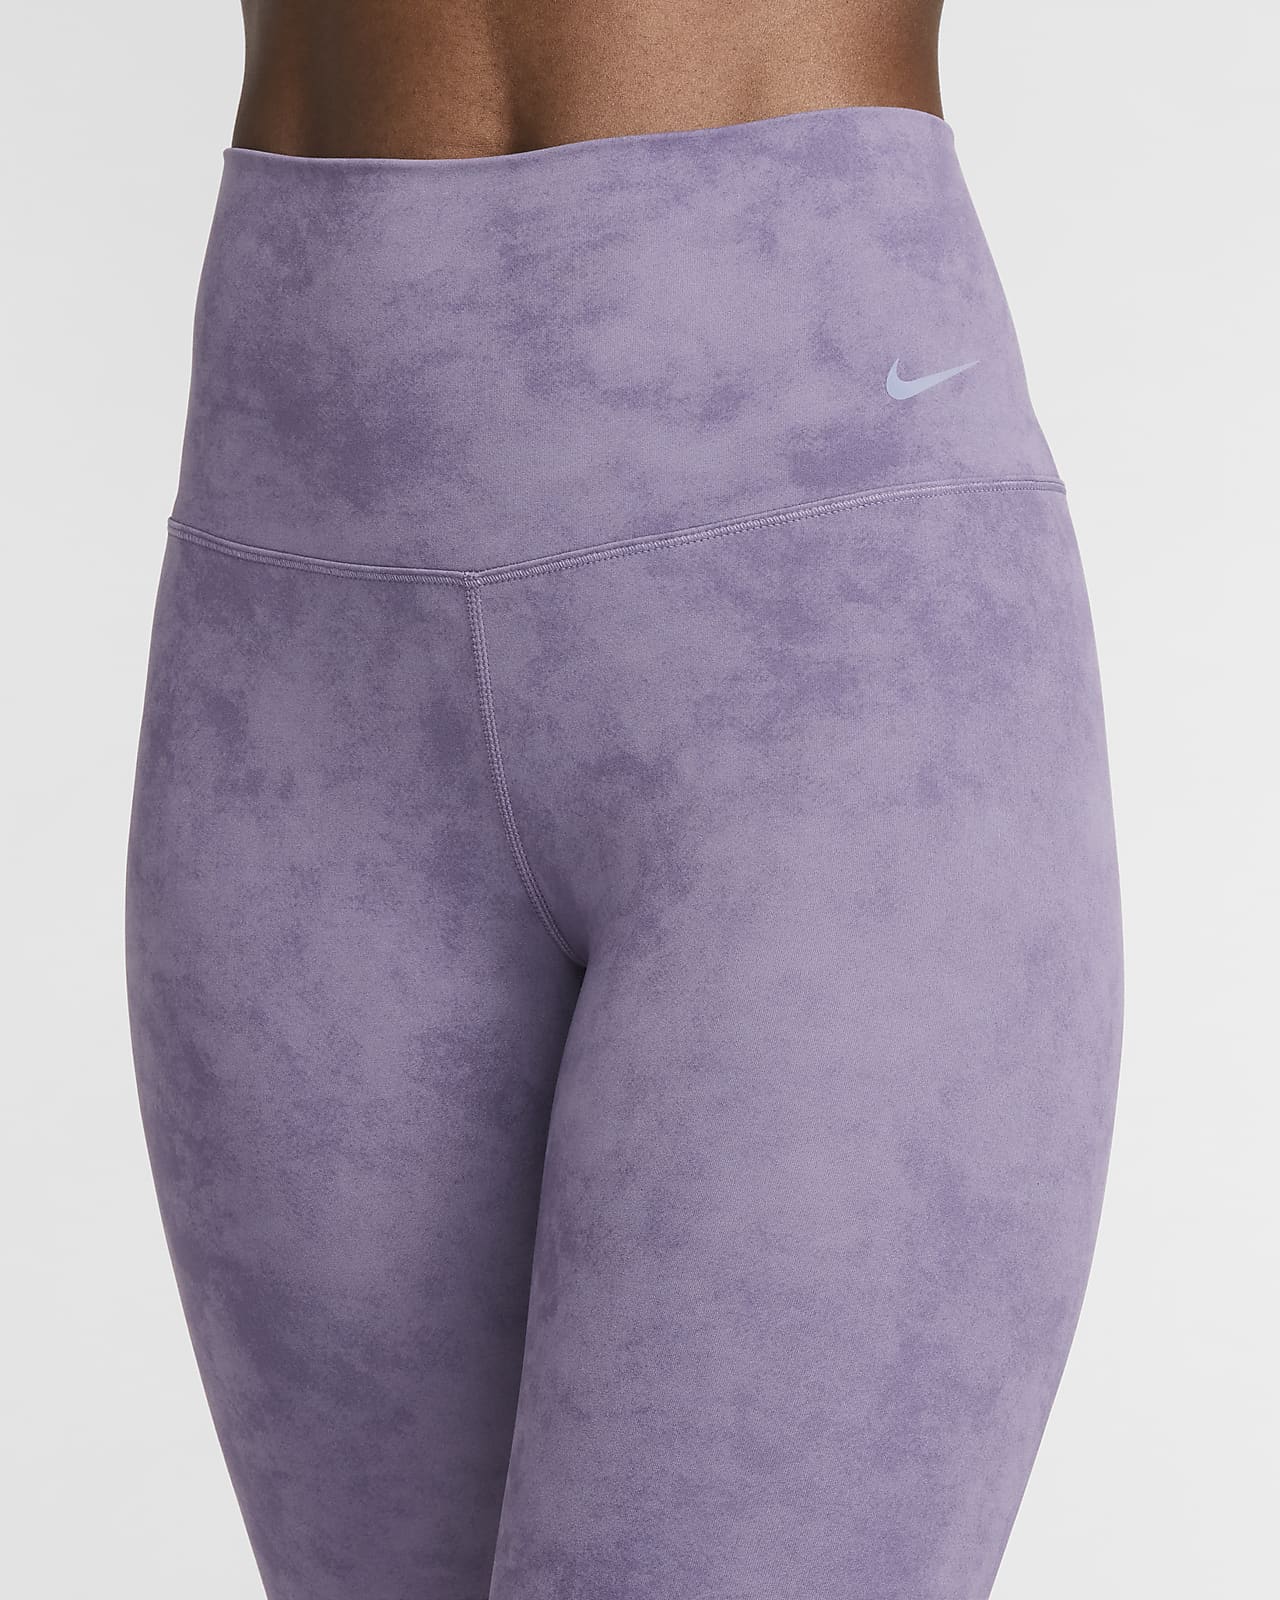 Nike, Zenvy High Waisted 7/8 Leggings - Violet Dust